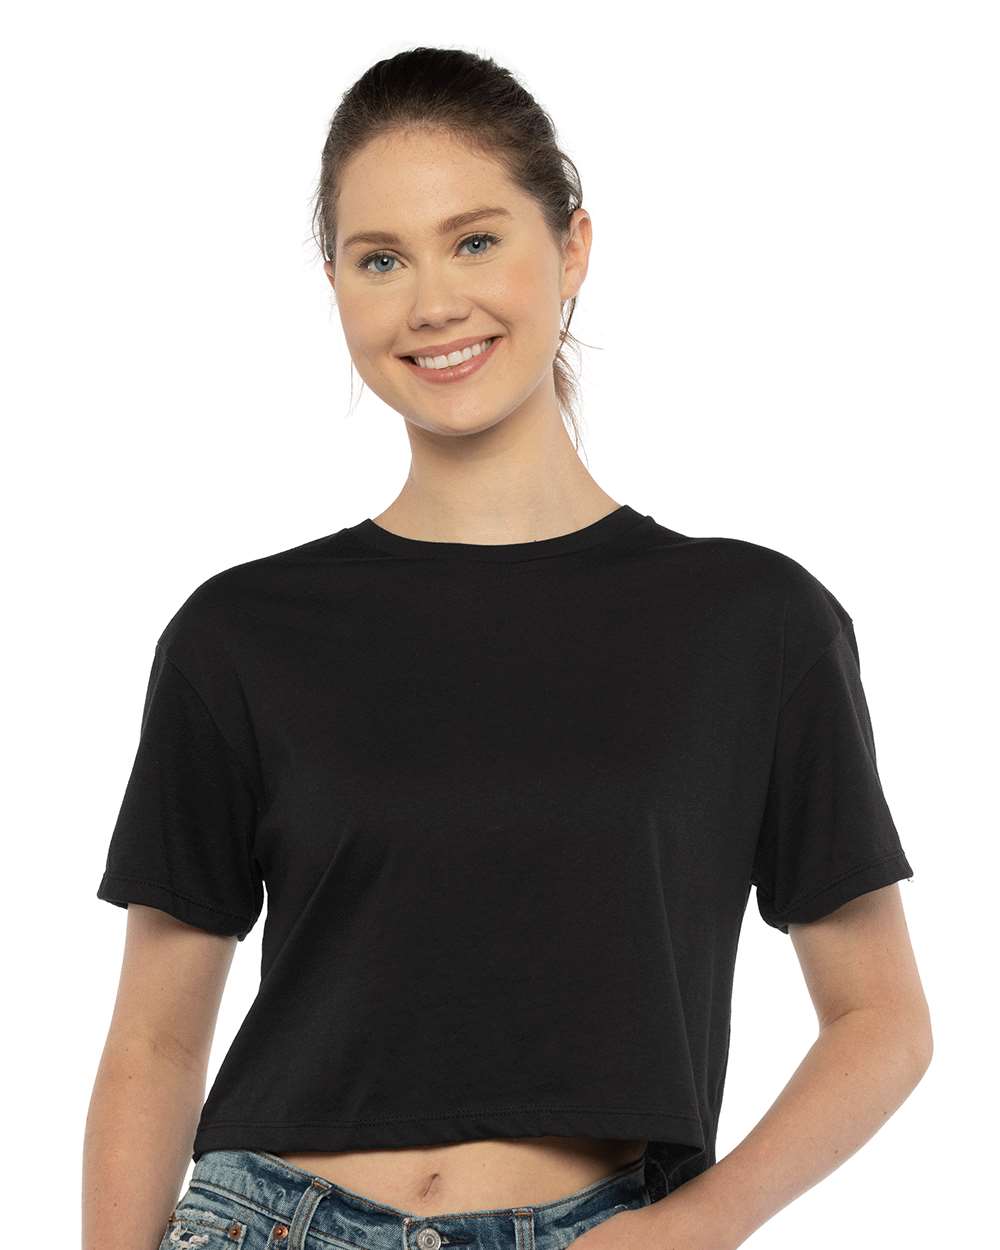 Next Level Women Short Sleeve Ideal Crop Tee Shirt 1580 Up To 3XL